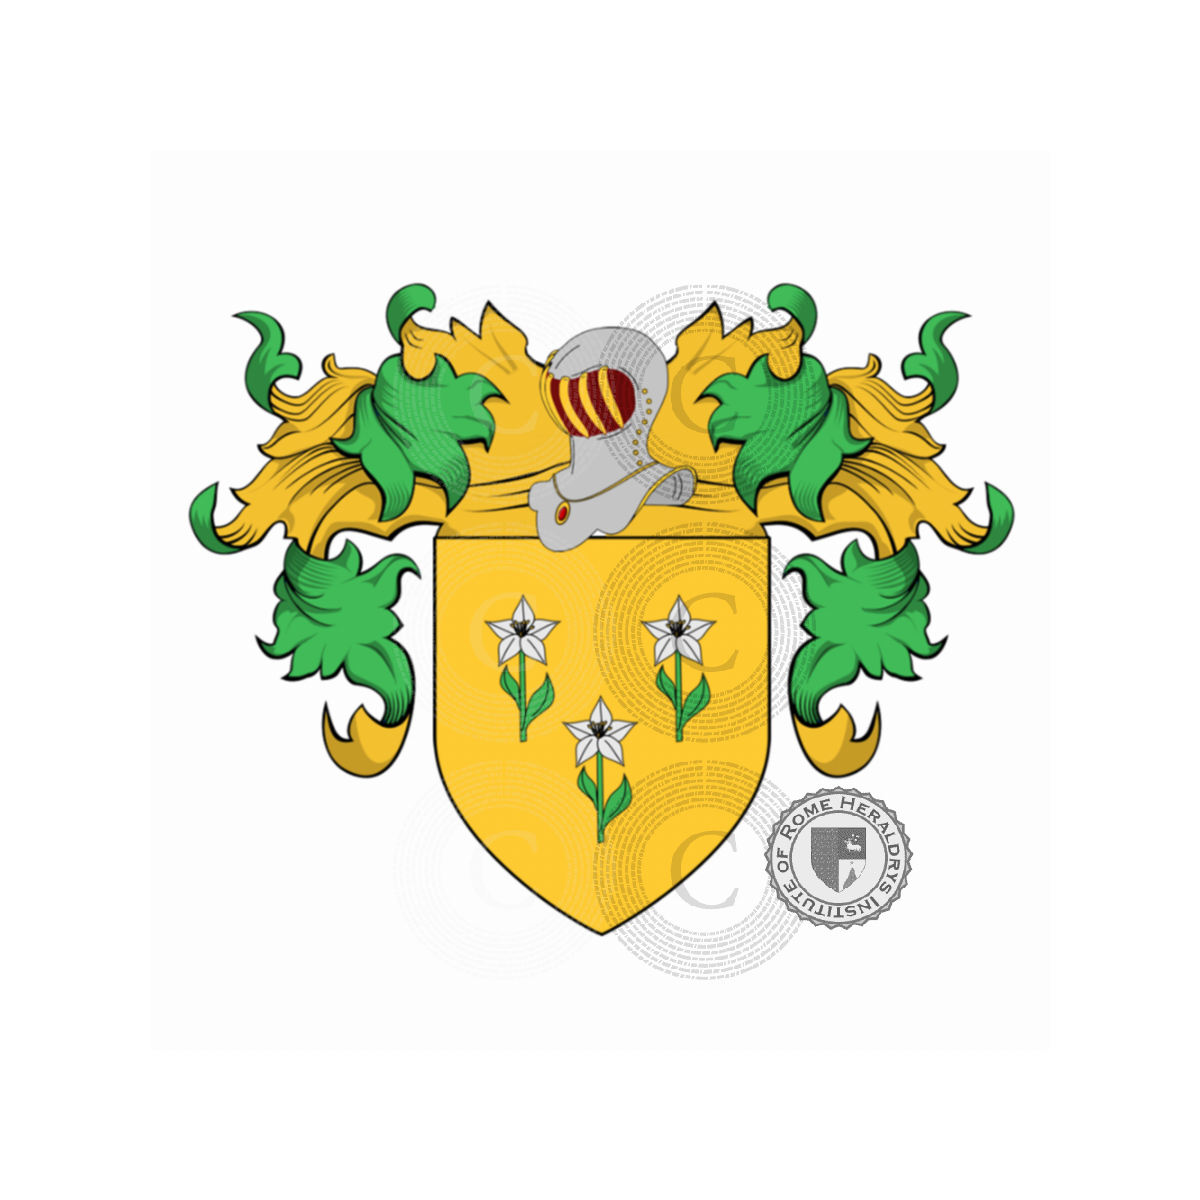 Escudo de la familiaBonazzi, Bonasijs,Bonazza,Bonazzi di San Nicandro